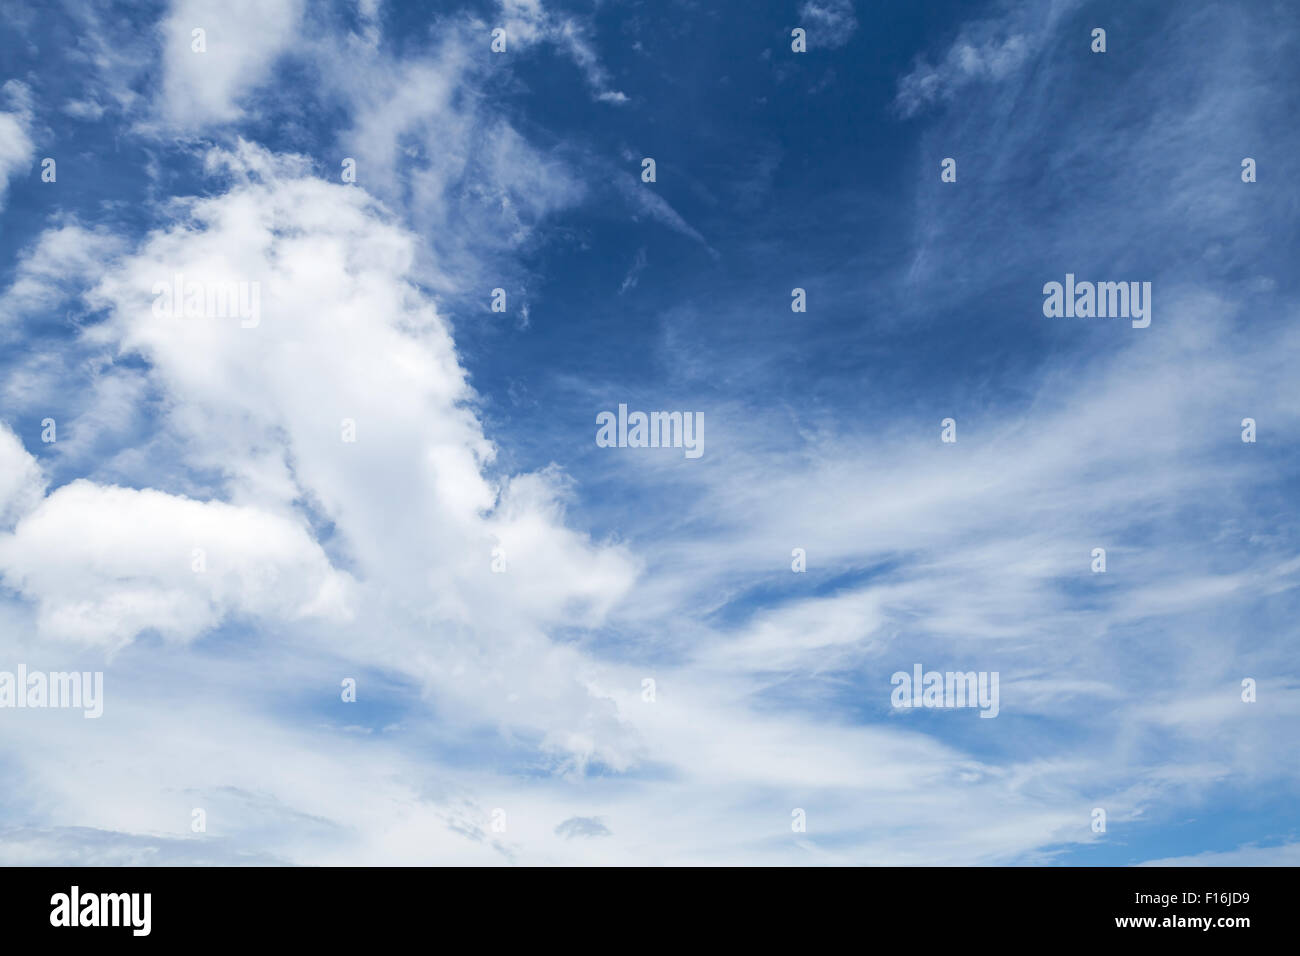 Cumulus, Cirrus et altocumulus. Ciel bleu avec différents types de nuages, le fond photo Banque D'Images